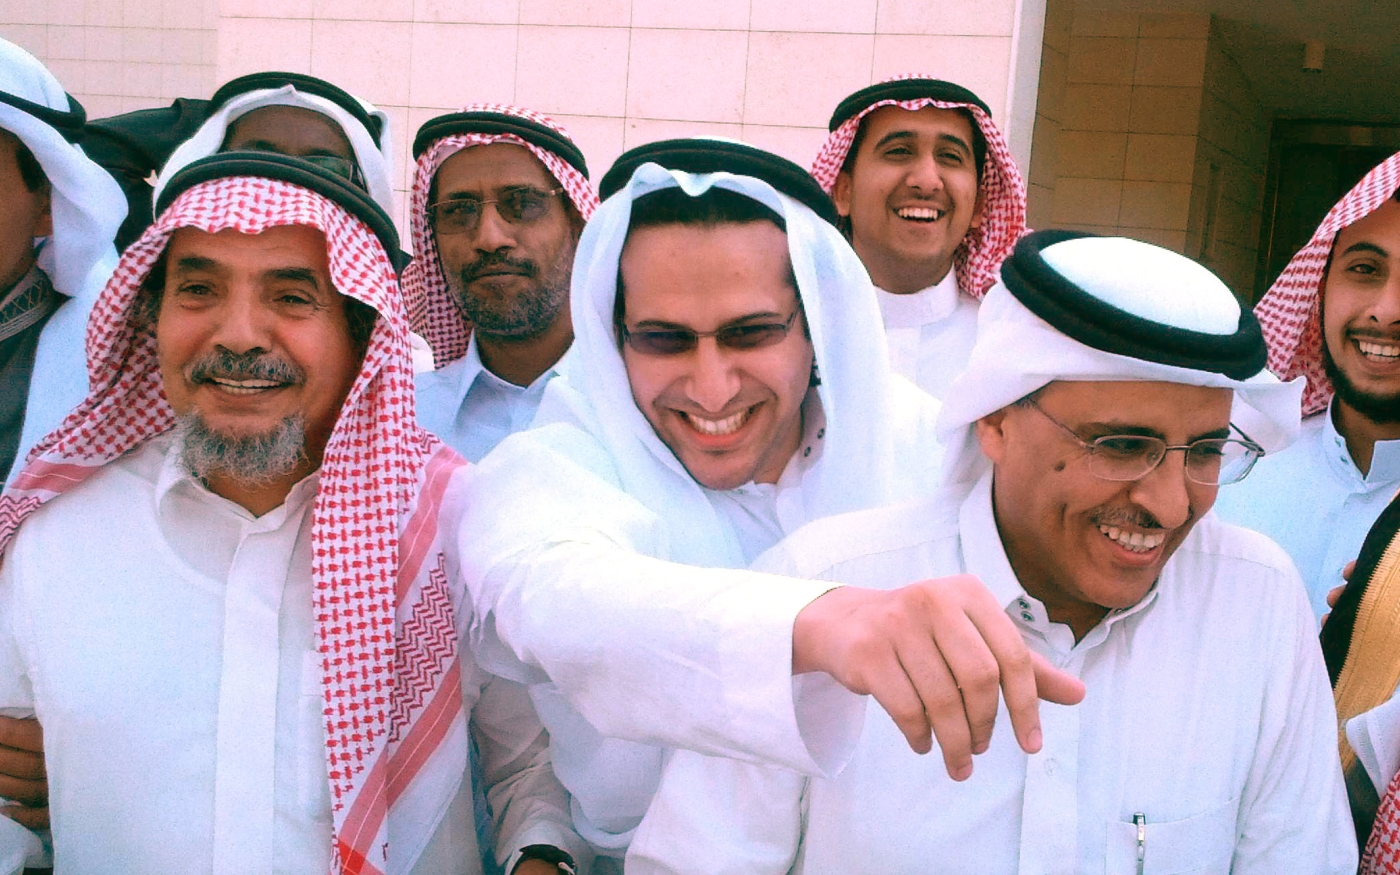 Abdullah al-Hamid (à gauche), Waleed Abu al-Khair (au centre) et Mohammad al-Qahtani (à droite) après une audience dans le procès contre Hasm à Riyad, en Arabie saoudite, le 24 novembre 2012 (Ahmed al-Osaimi/Wikimedia Commons)